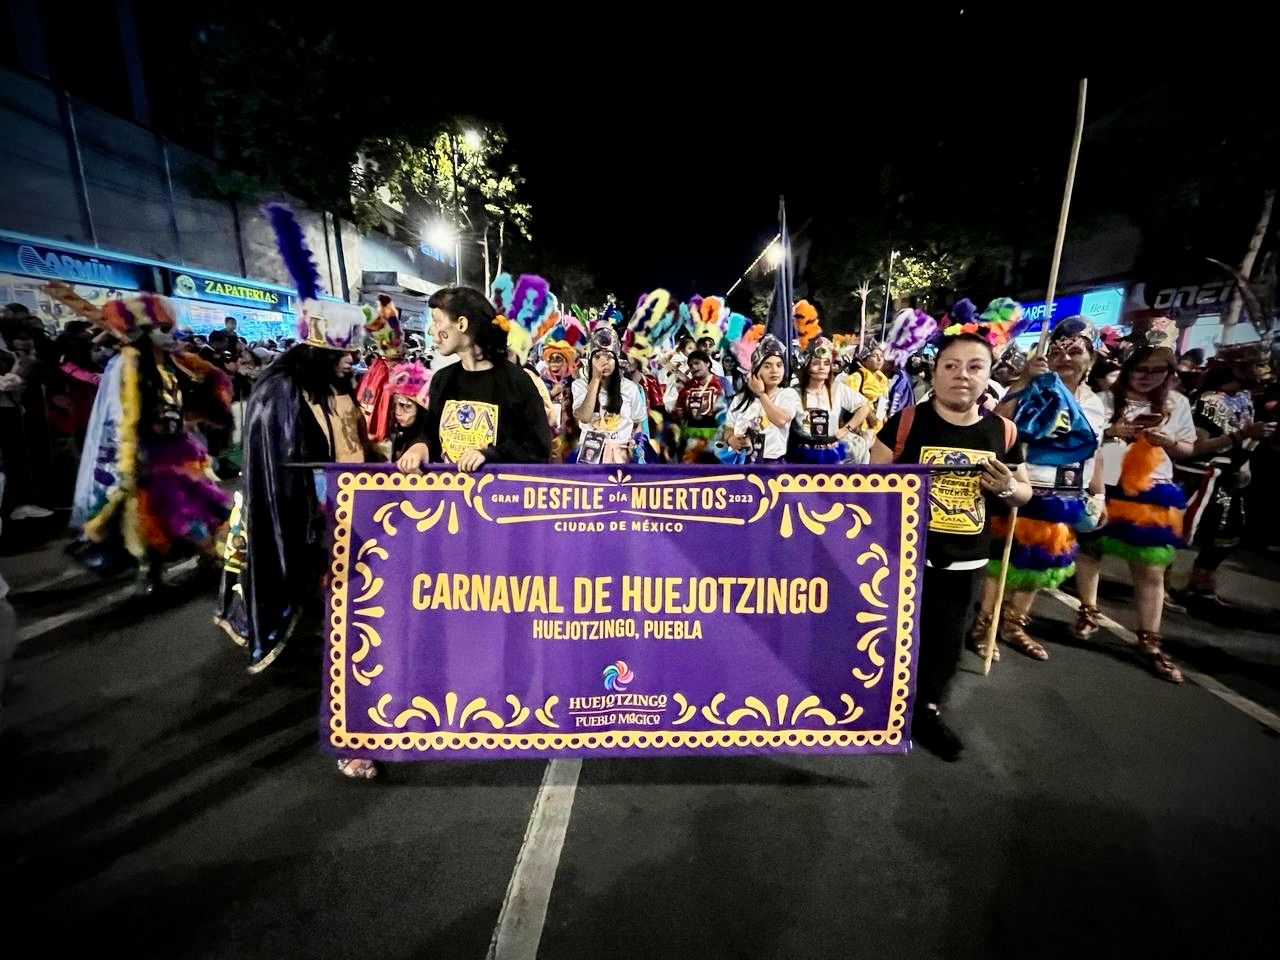 Espectacular participación tuvo Huejotzingo Pueblo Mágico en el Desfile del Día de Muertos en la Ciudad de México